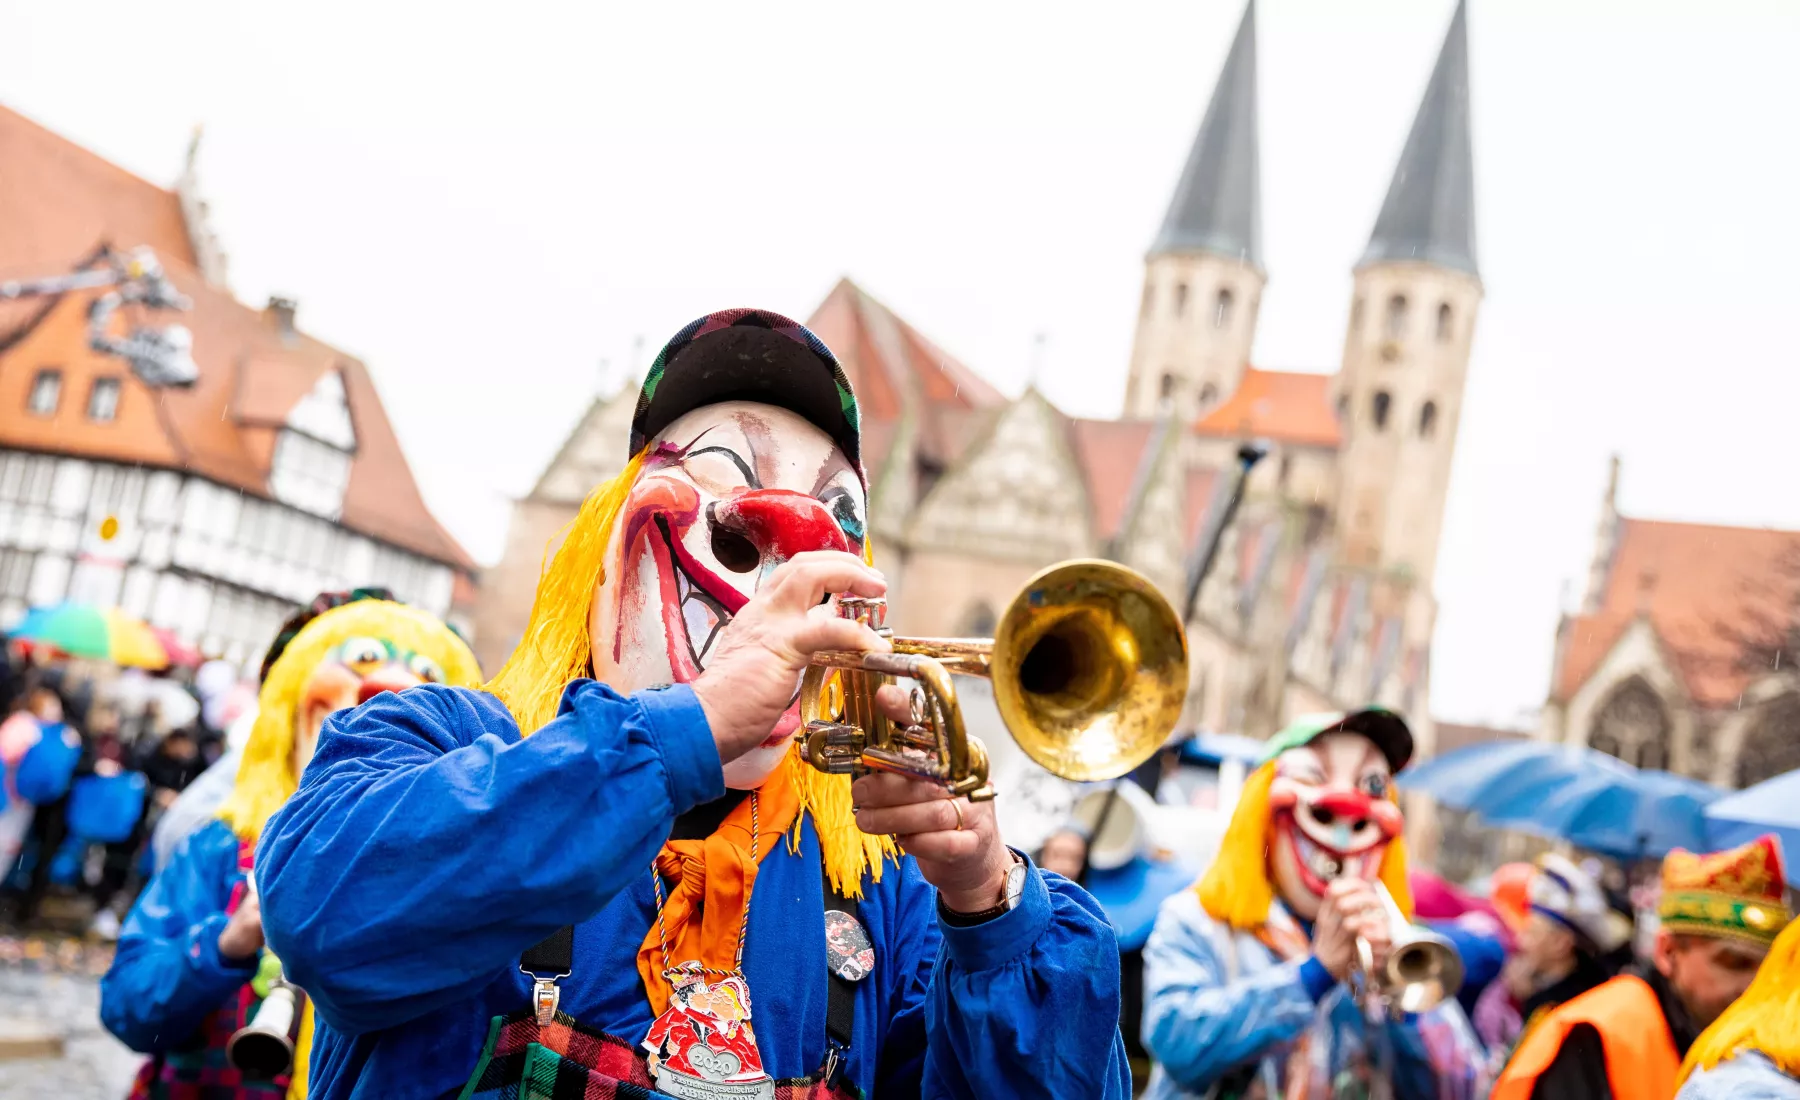 Karnevalisten nahmen 2020 am Karnevalsumzug «Schoduvel» teil und überquerten den Altstadtmarkt.